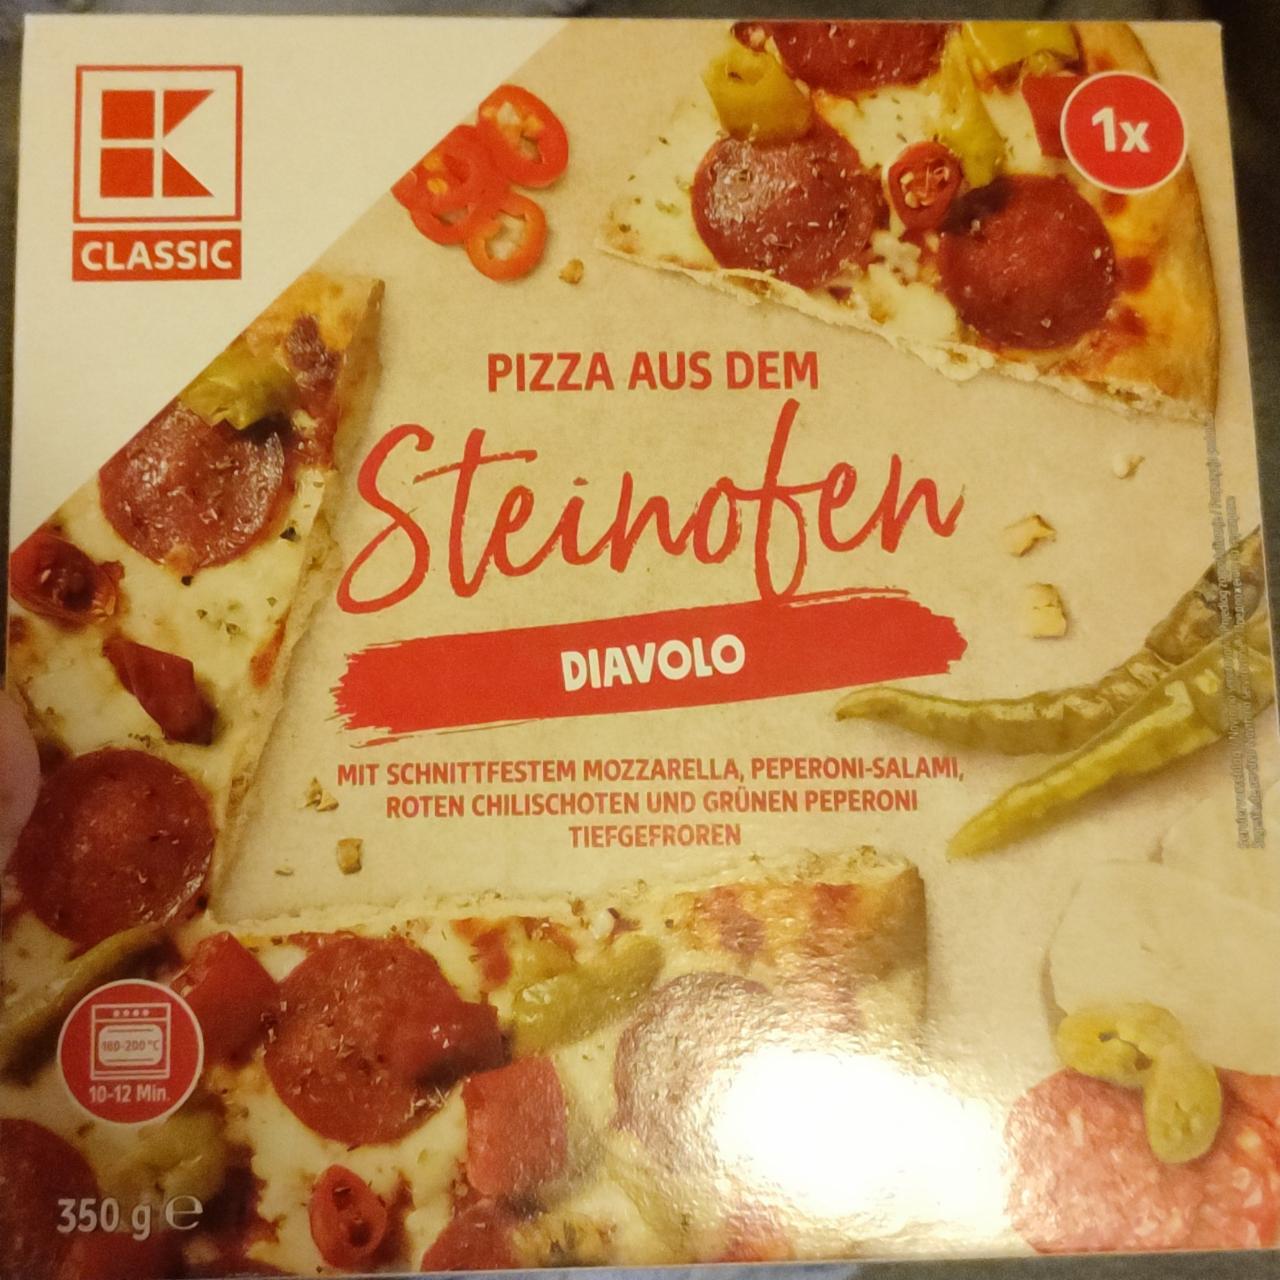 Fotografie - Pizza aus dem Steinofen Diavolo K-Classic